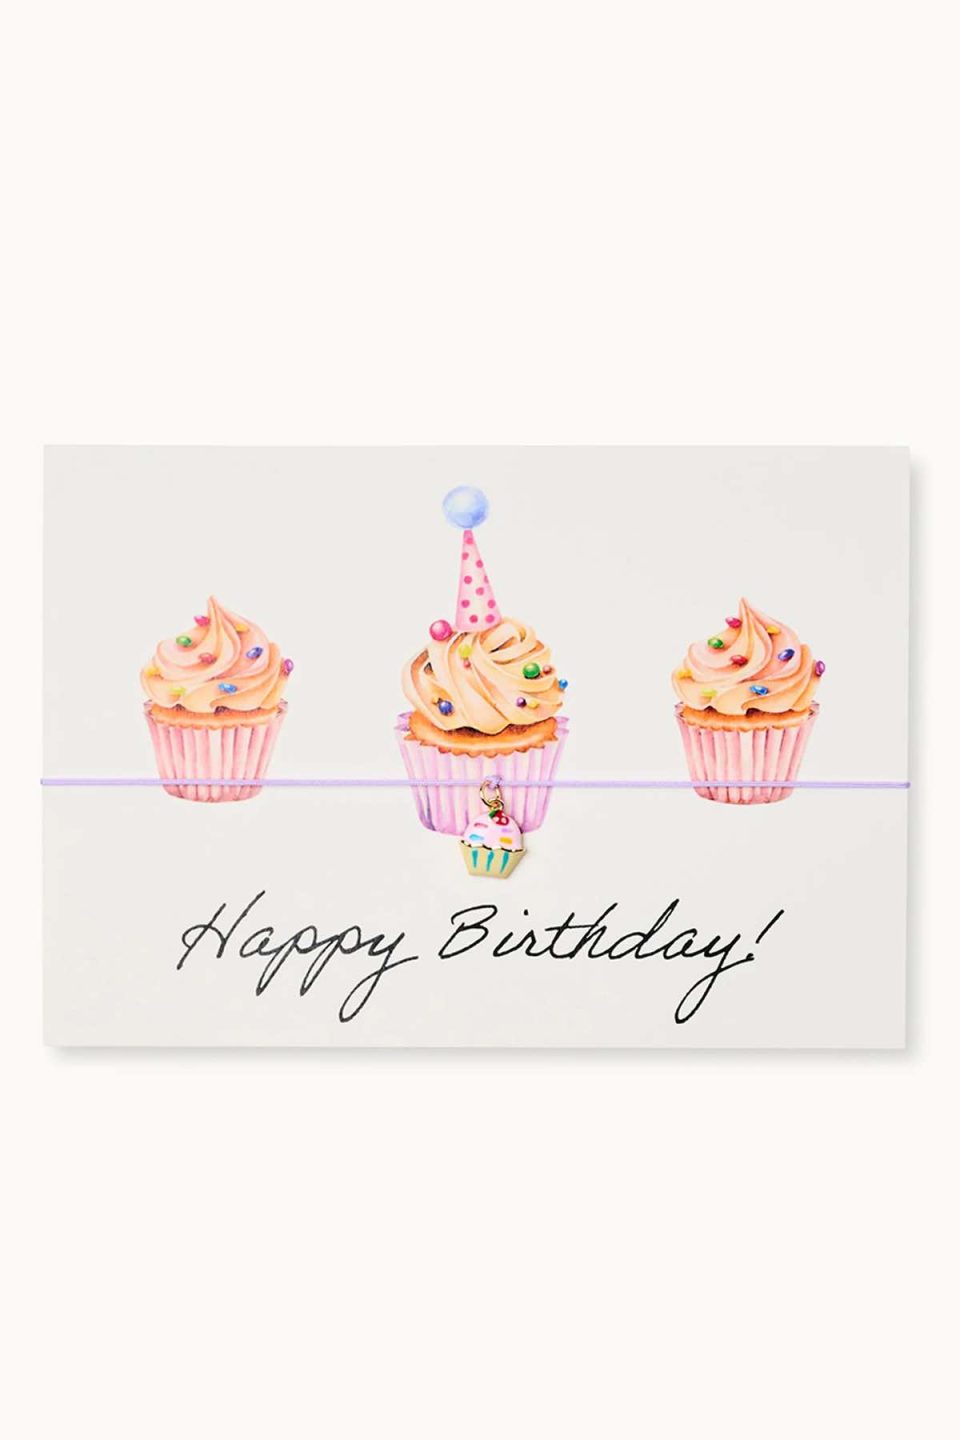 Na slici se vidi čestitka s ilustracijom malih tortica u vodenim bojama. Oko čestitke je omotana narukvica na ljubičastoj vrpci s pozlaćenim privjeskom u obliku tortice. Tekst na čestitci je "Happy Birthday", ispisan rukopisno crnim slovima.